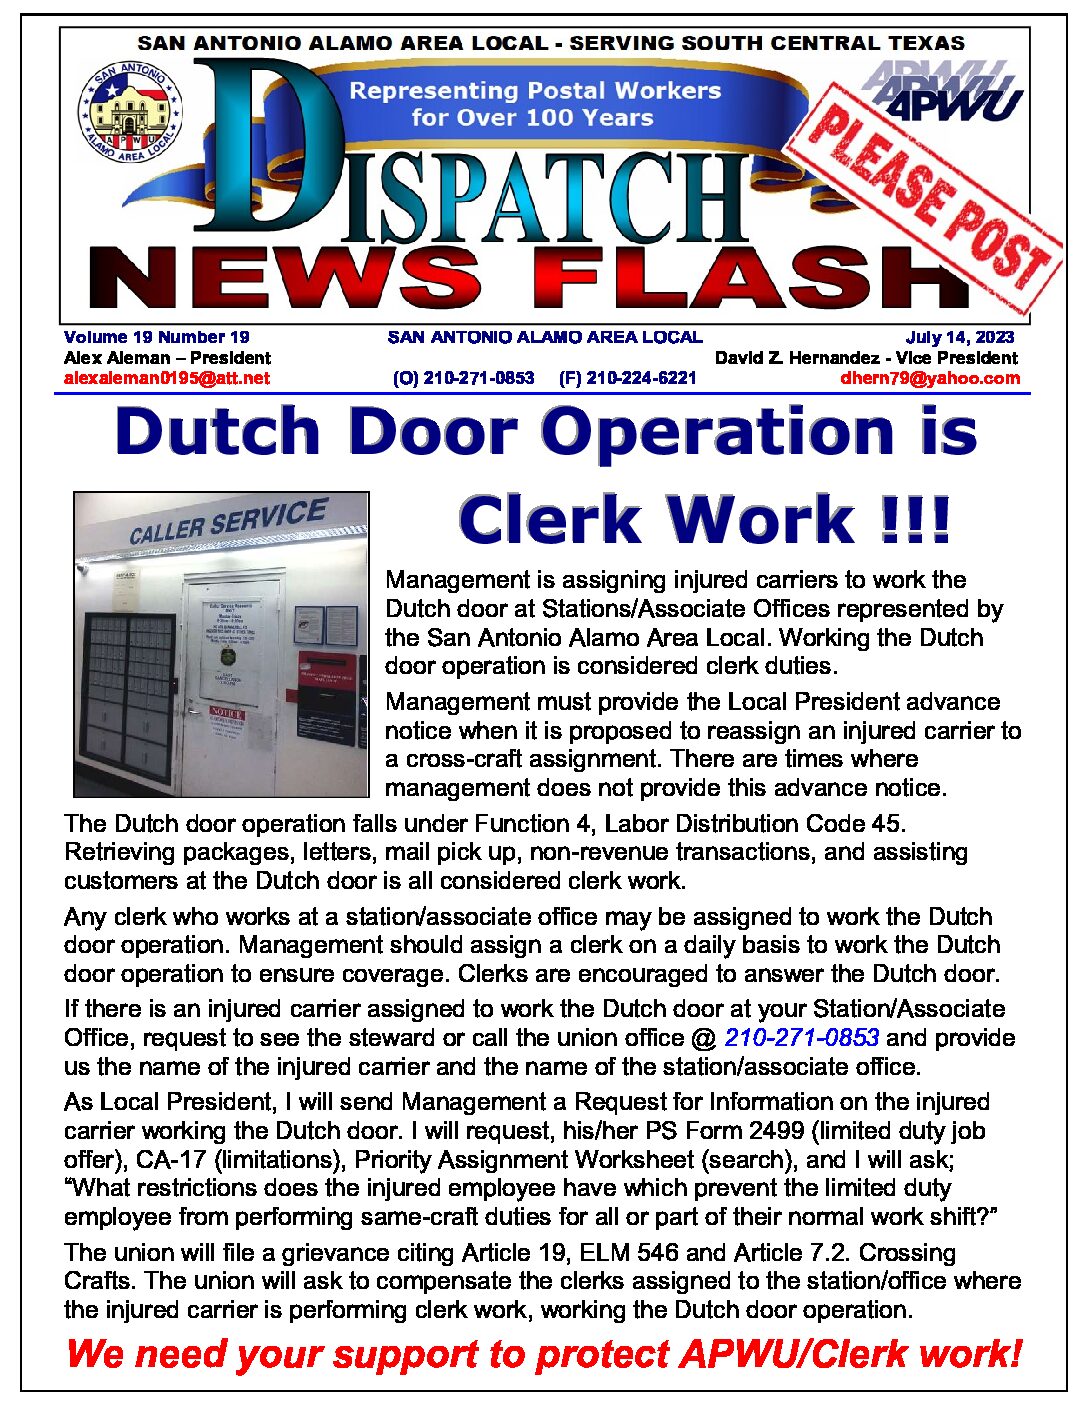 NewFlash 19-19 Dutch Door Operation is Clerk Work - 